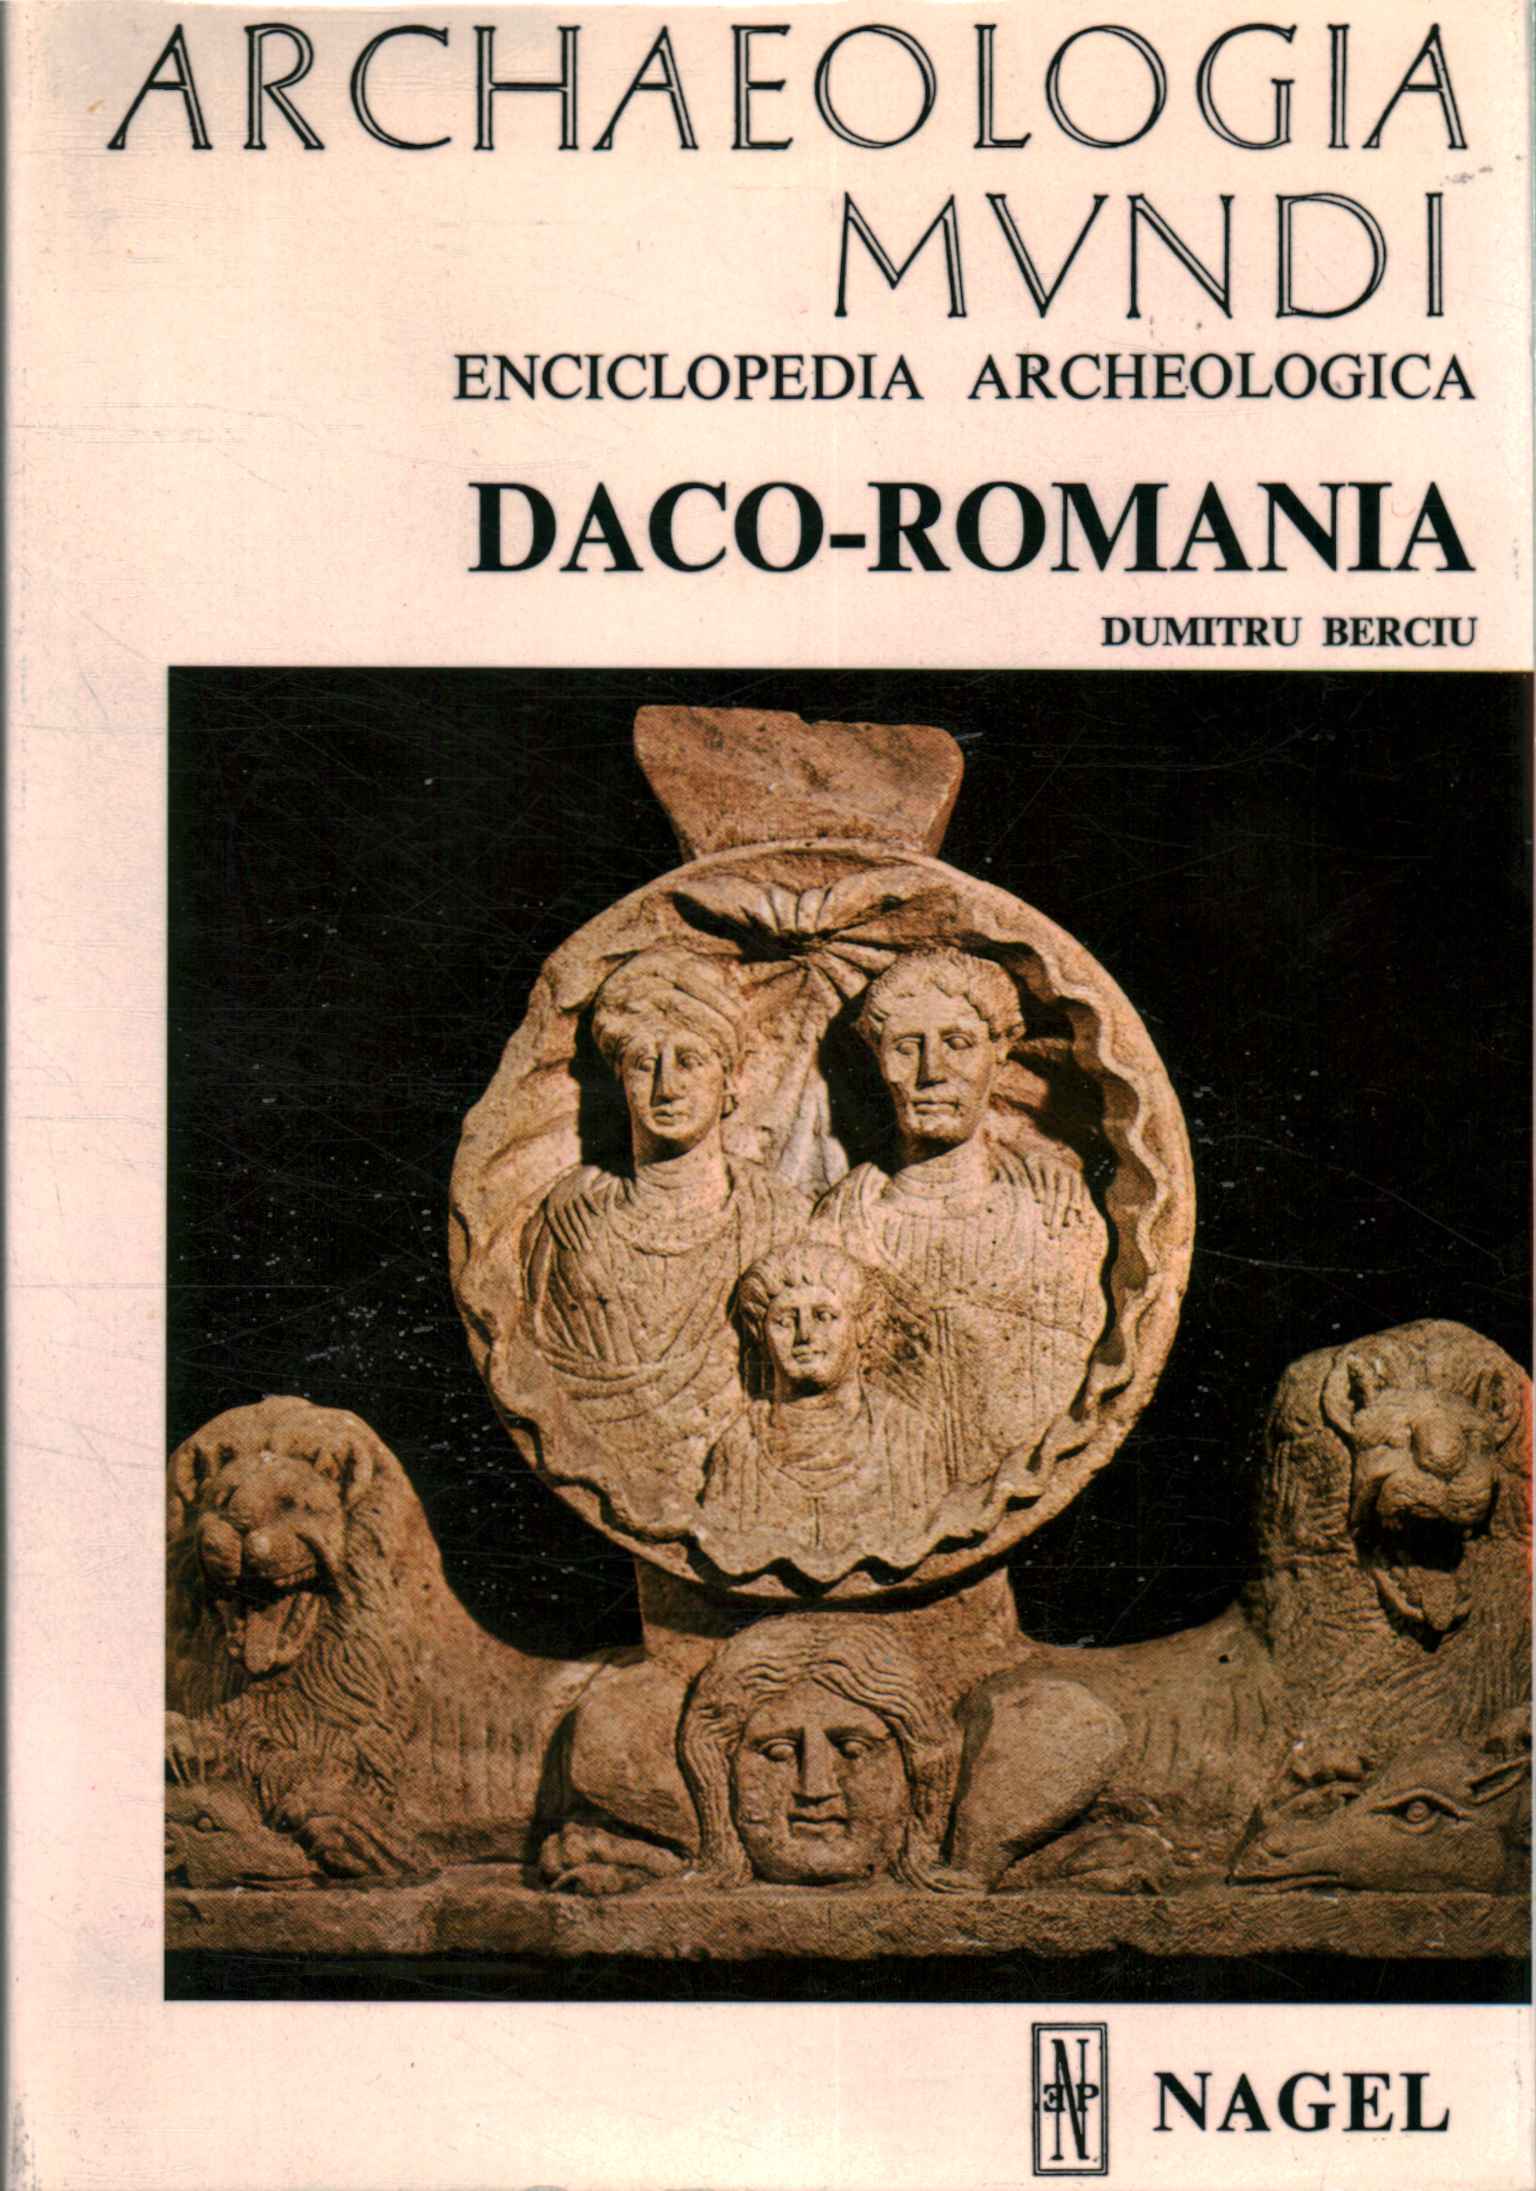 Archaeological encyclopedia. Daco-Romania